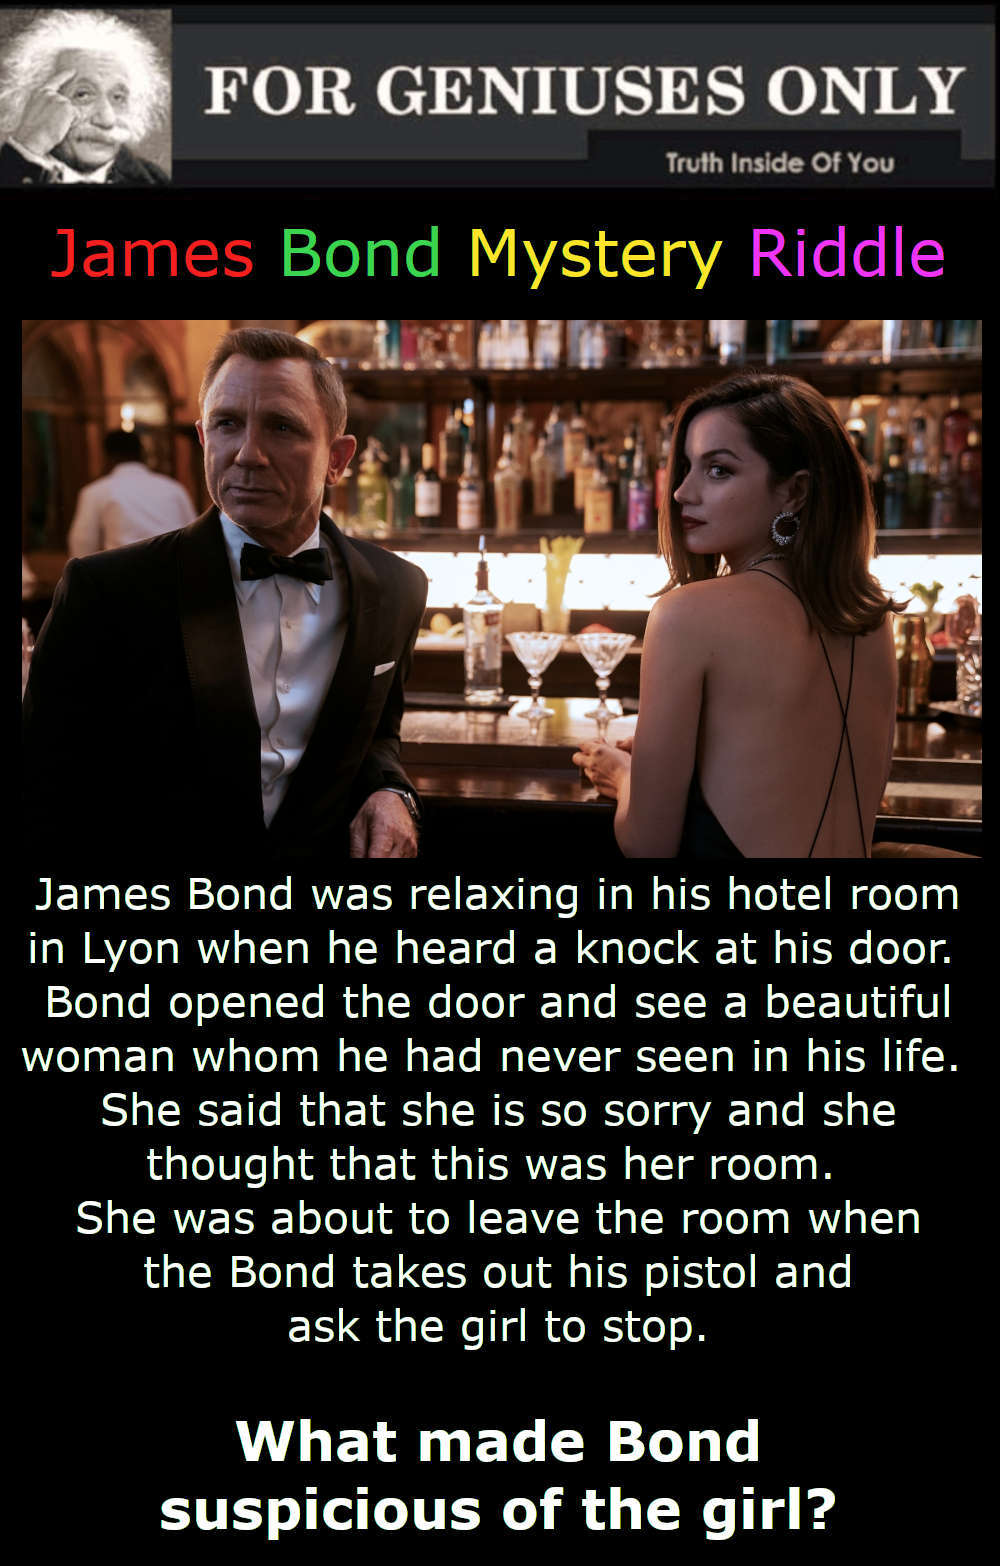 James Bond Mystery Riddle